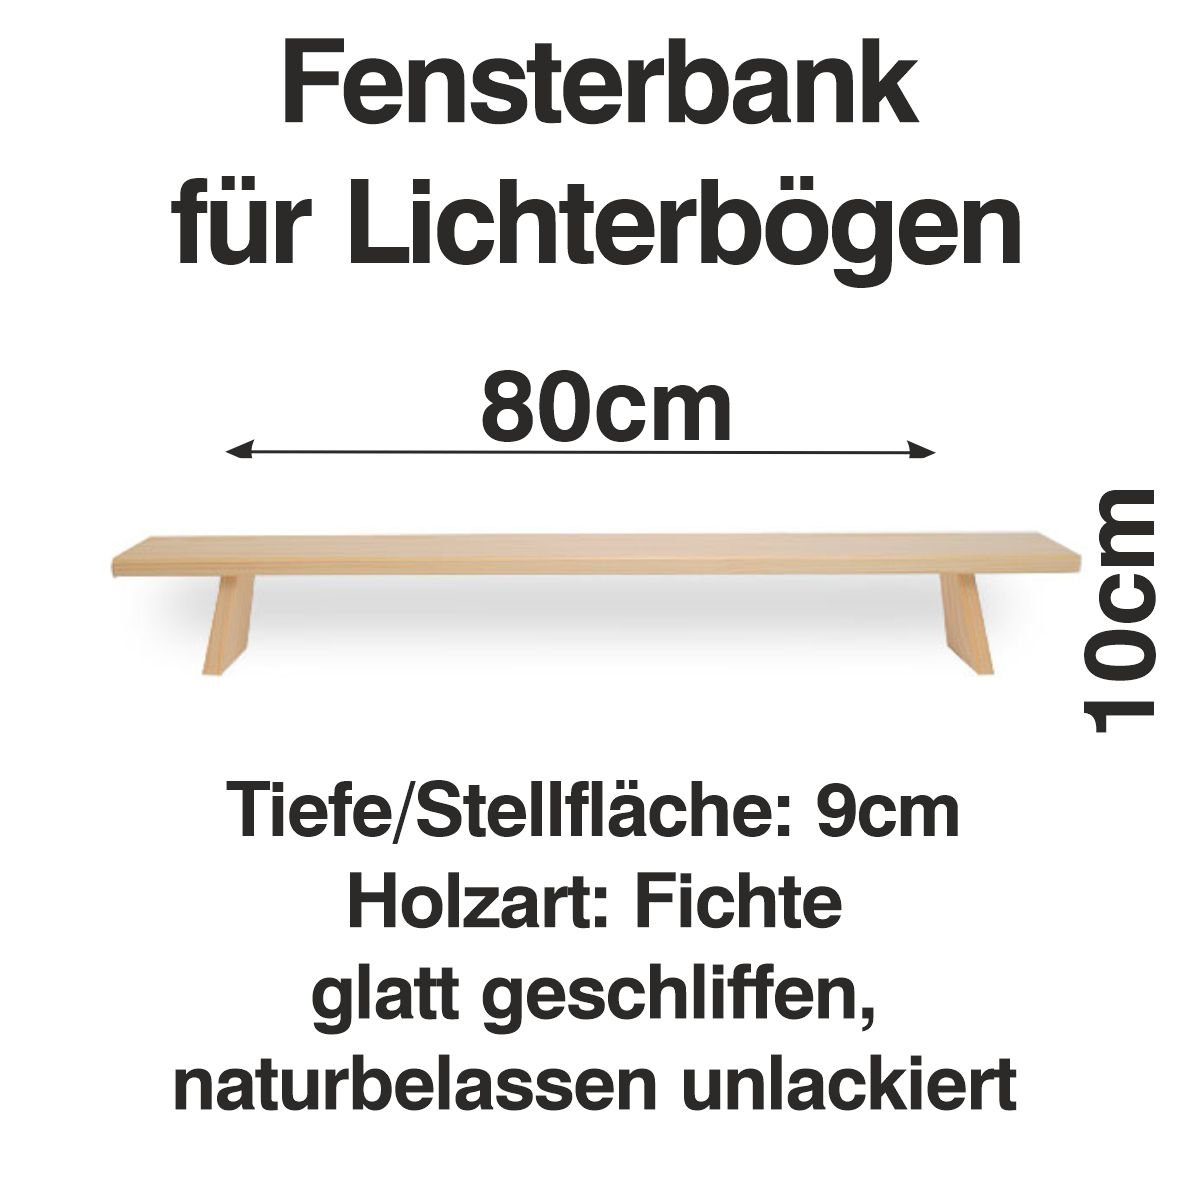 Erhöhung Schwibbogen Holzkunst Lichterbogen Schwibbogen-Fensterbank Schenk 80 Fenst Bank cm